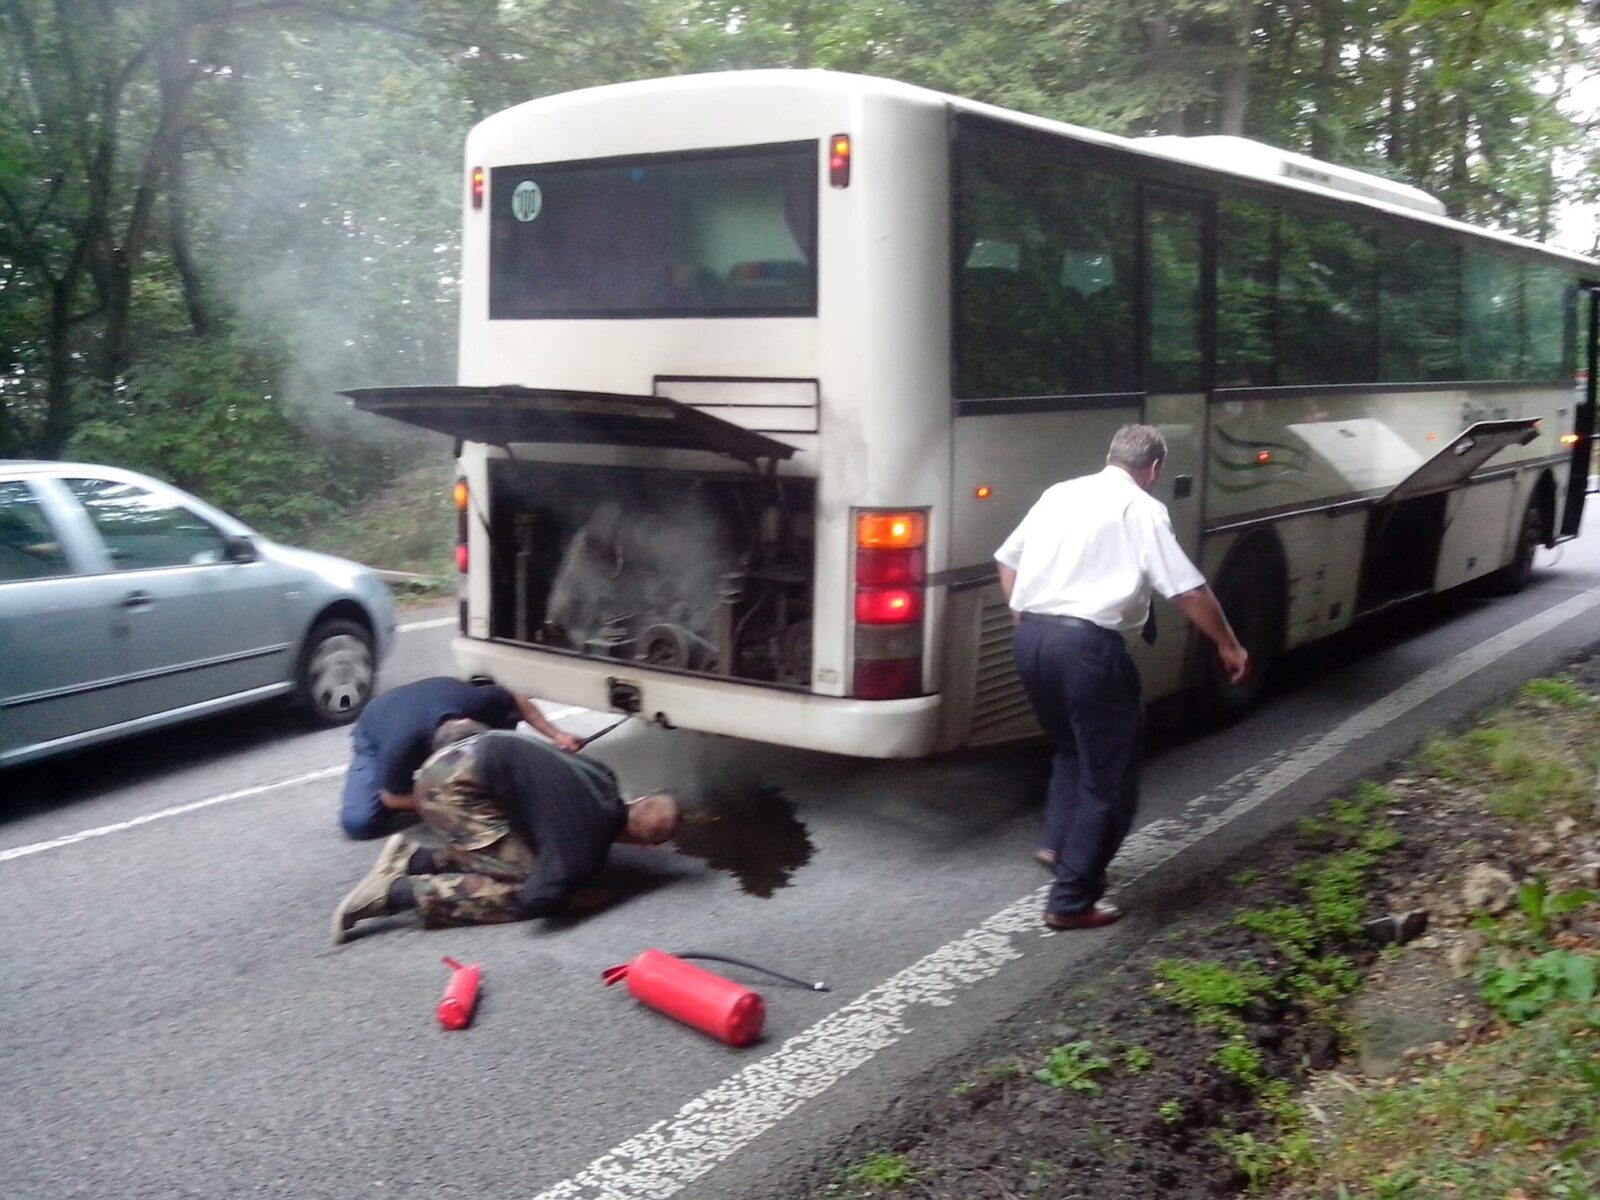 Nehoda autobusu očima cestujícího. Když hoří, zachovejte klidnou hlavu a přiložte ruku k dílu, řidič Vám nepomůže